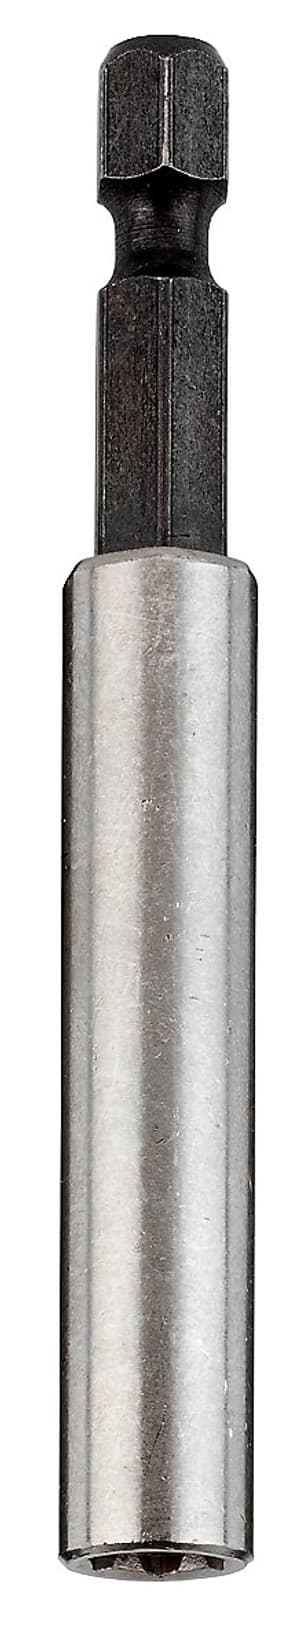 Inox Halter Edelstahlhülse 1/4" 75 mm, 1 Stk.